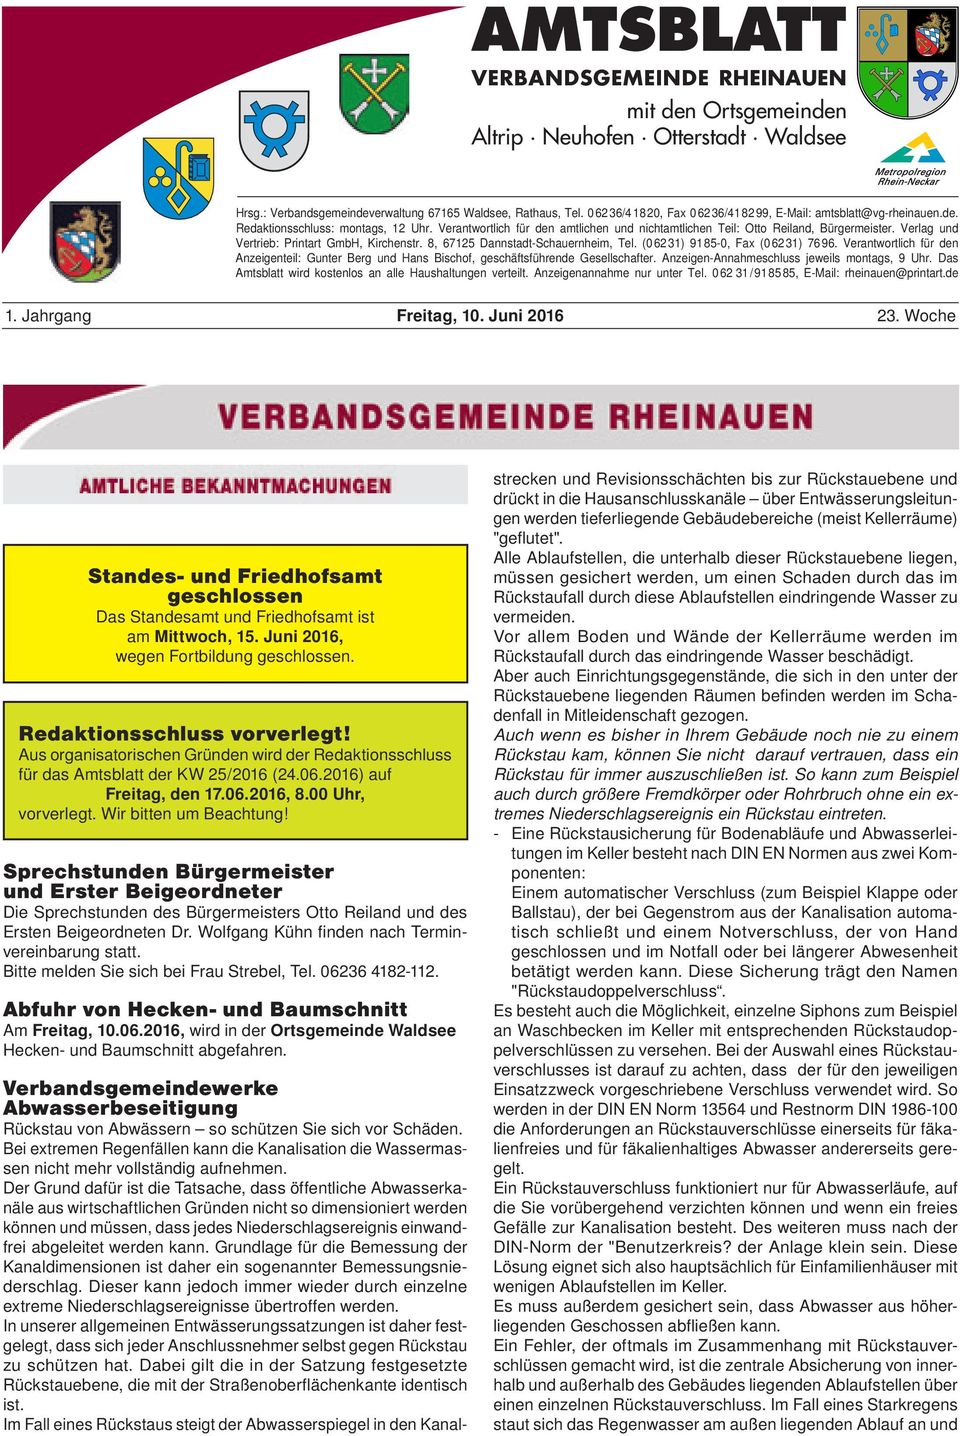 Verlag und Vertrieb: Printart GmbH, Kirchenstr. 8, 67125 Dannstadt-Schauernheim, Tel. (0 62 31) 91 85-0, Fax (0 62 31) 76 96.